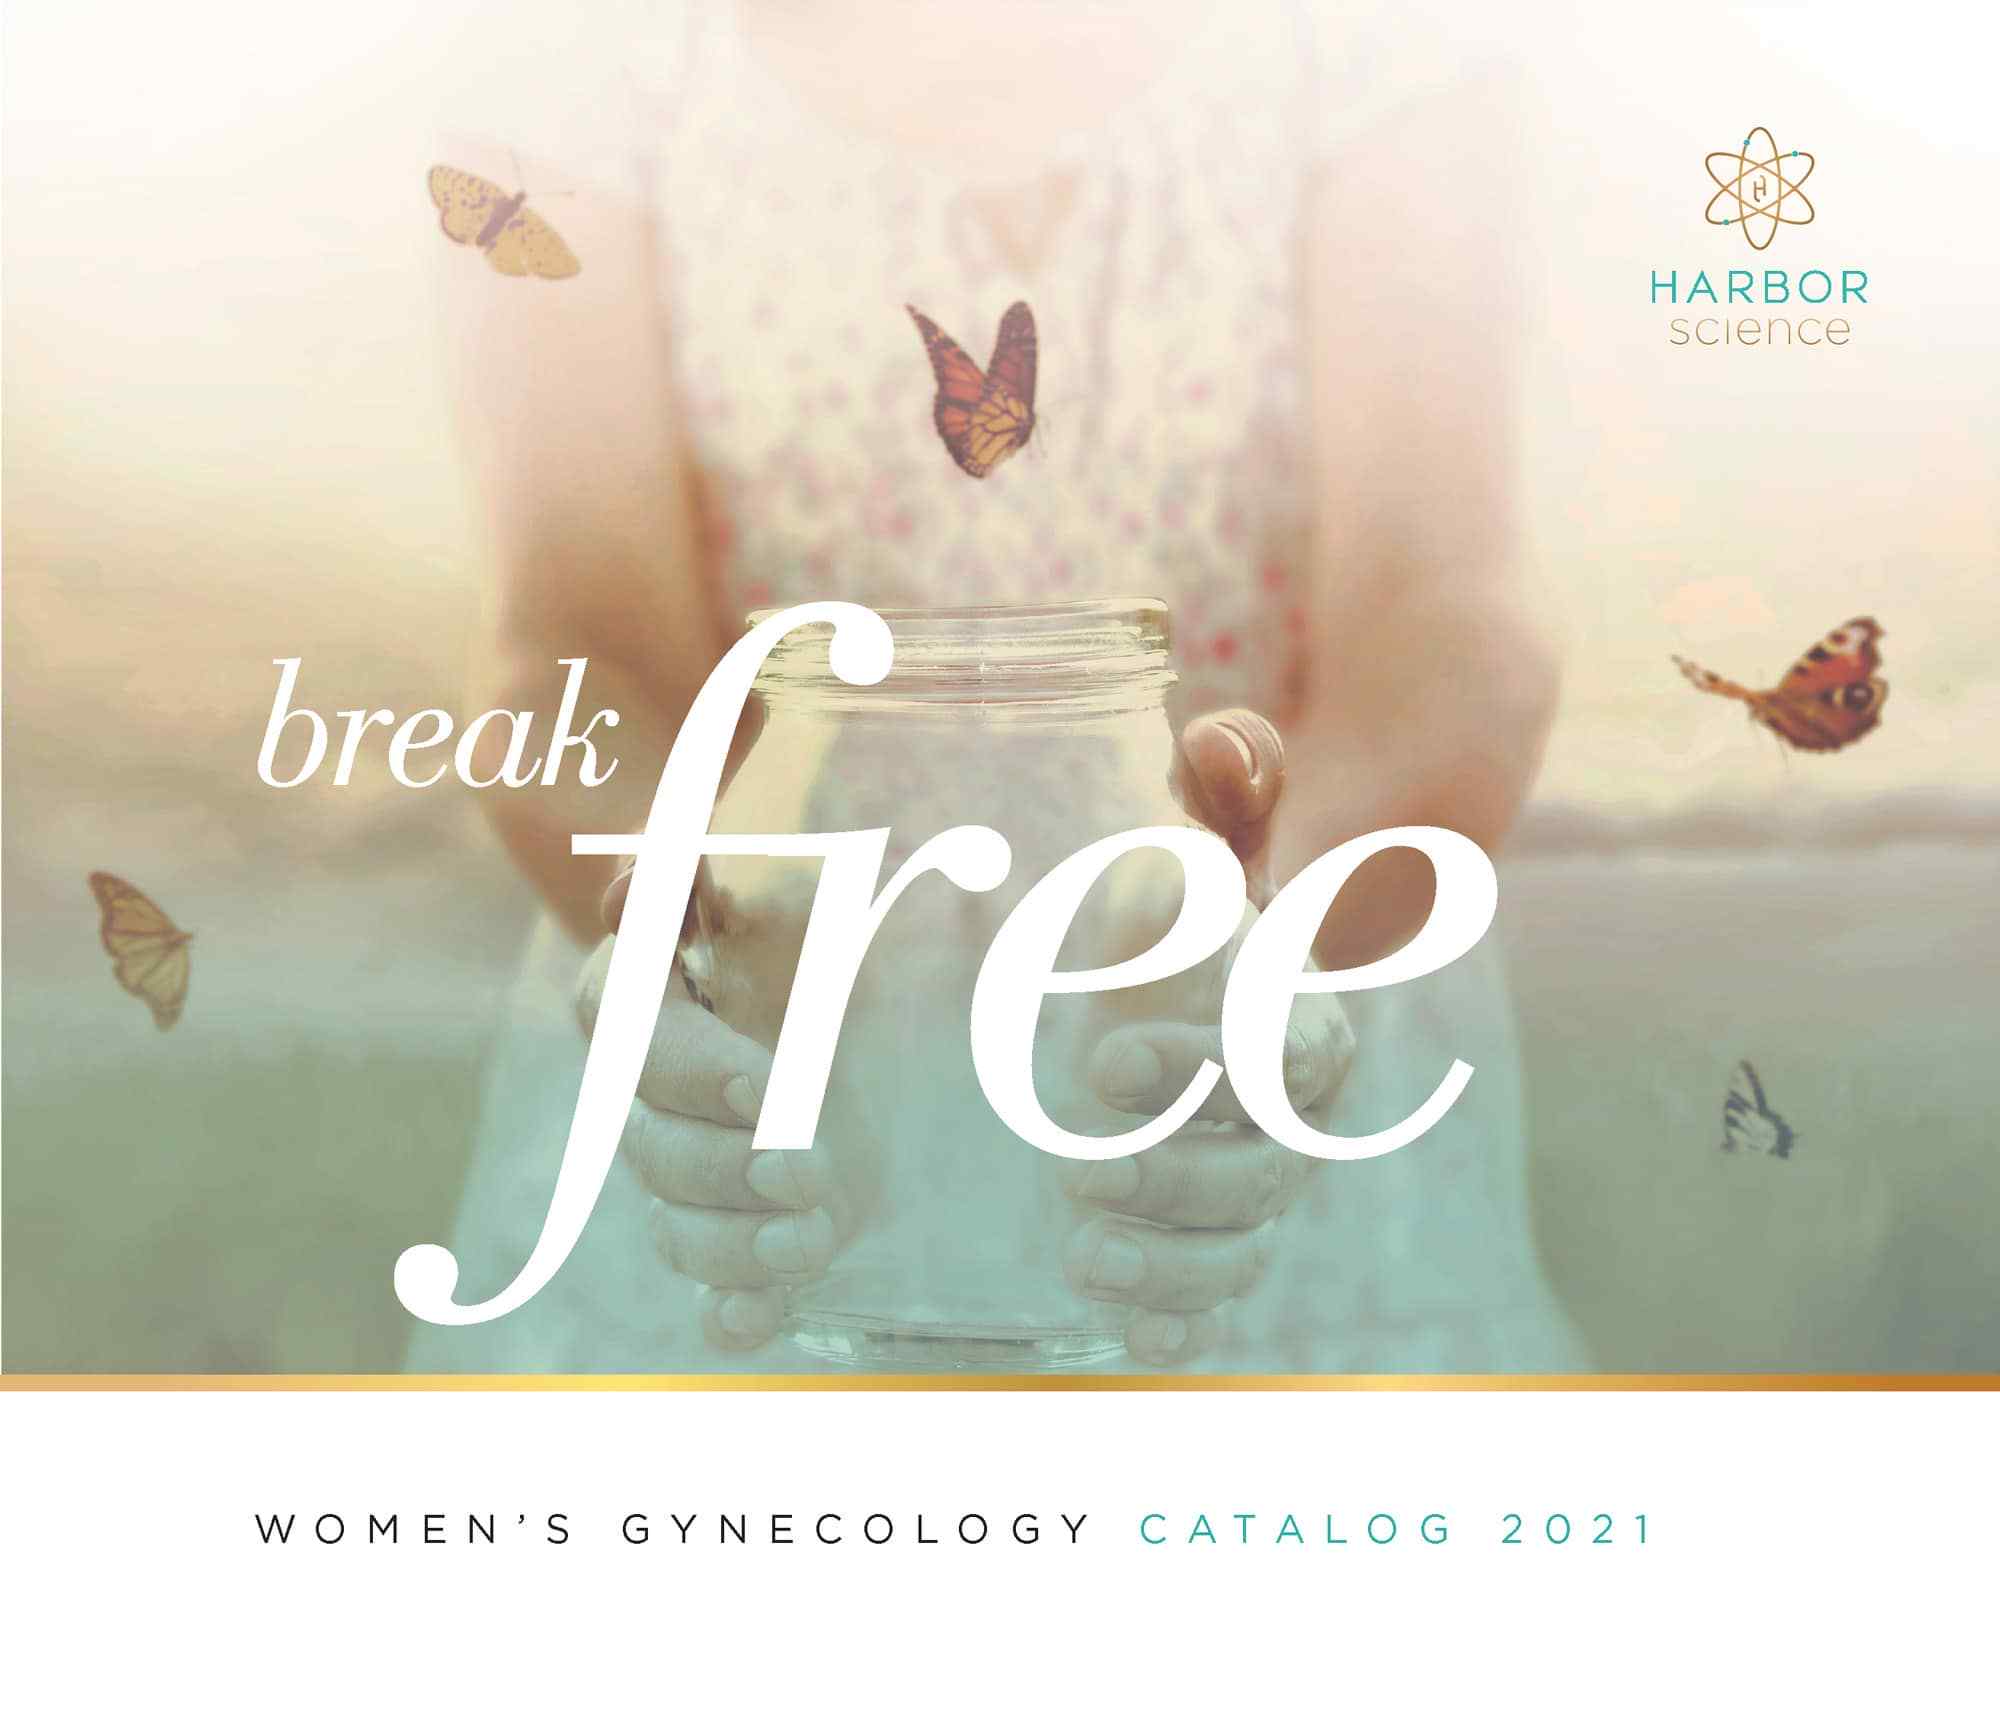 Break Free Women's Gynecology Catalog 2021